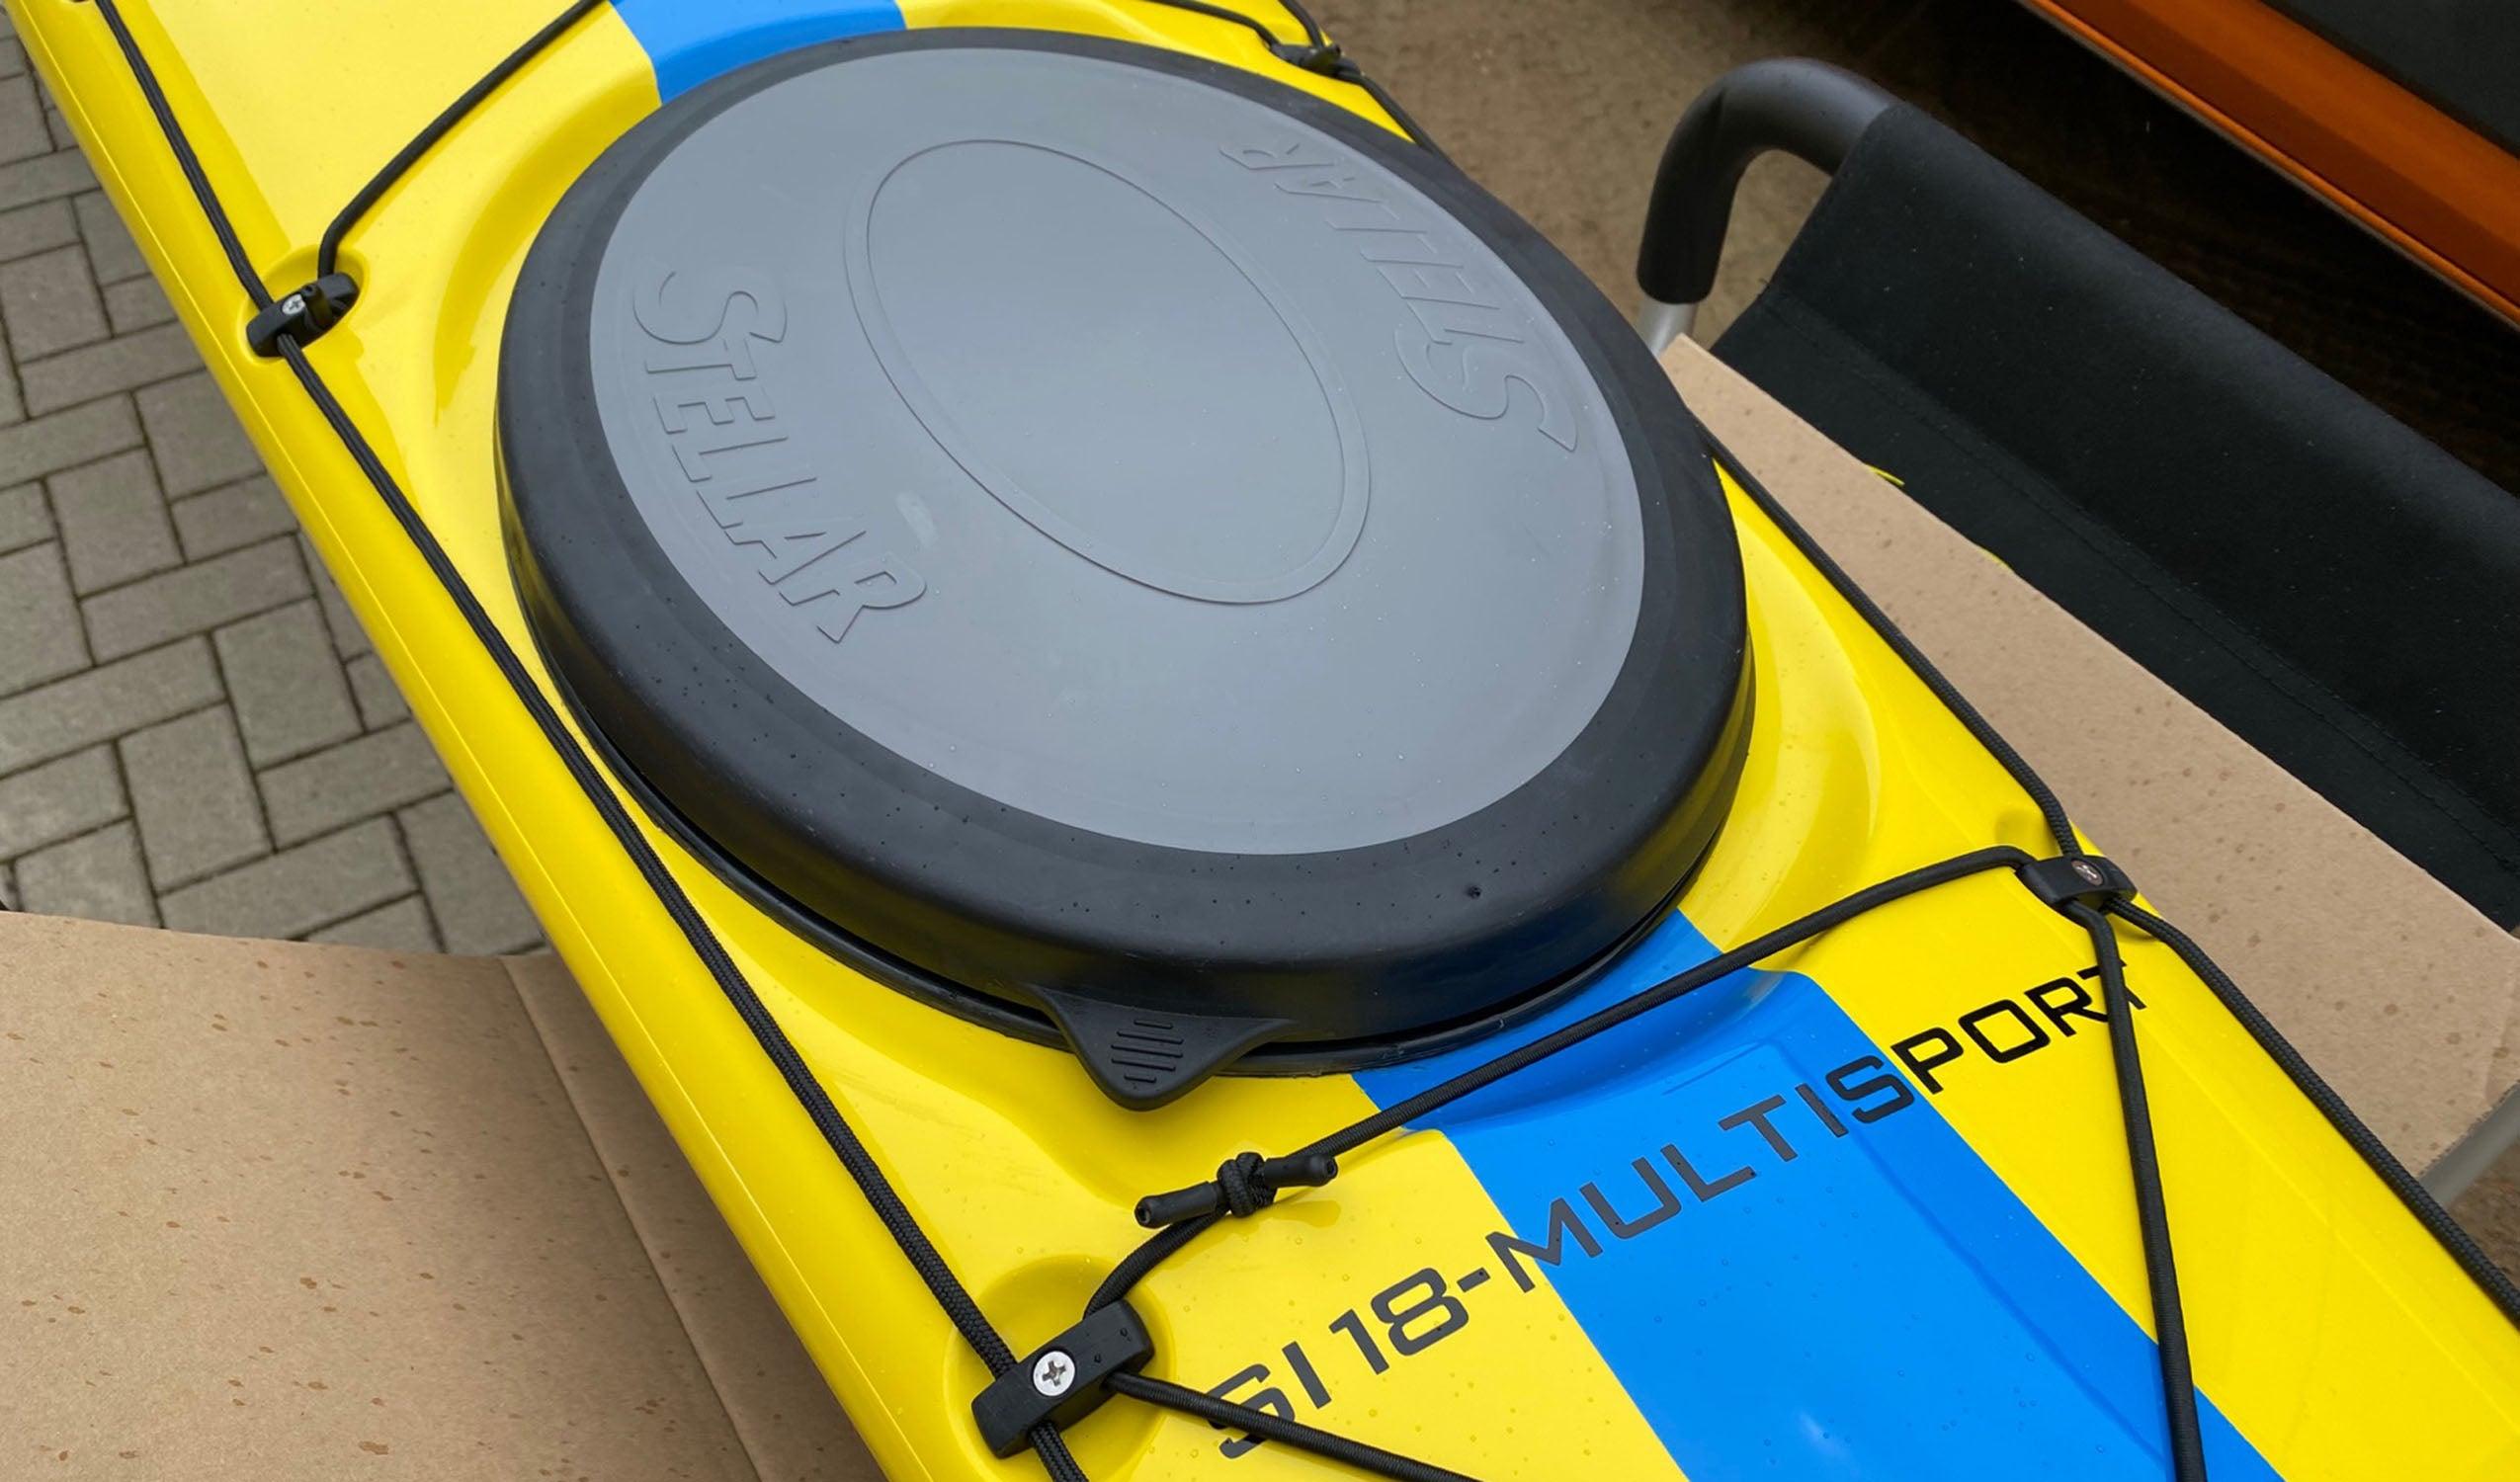 Produktbild von Kajak " SI18 Multisport-gelb blau " der Marke STELLAR Lightweight für 3390.00 €. Erhältlich online bei Lite Venture ( www.liteventure.de )